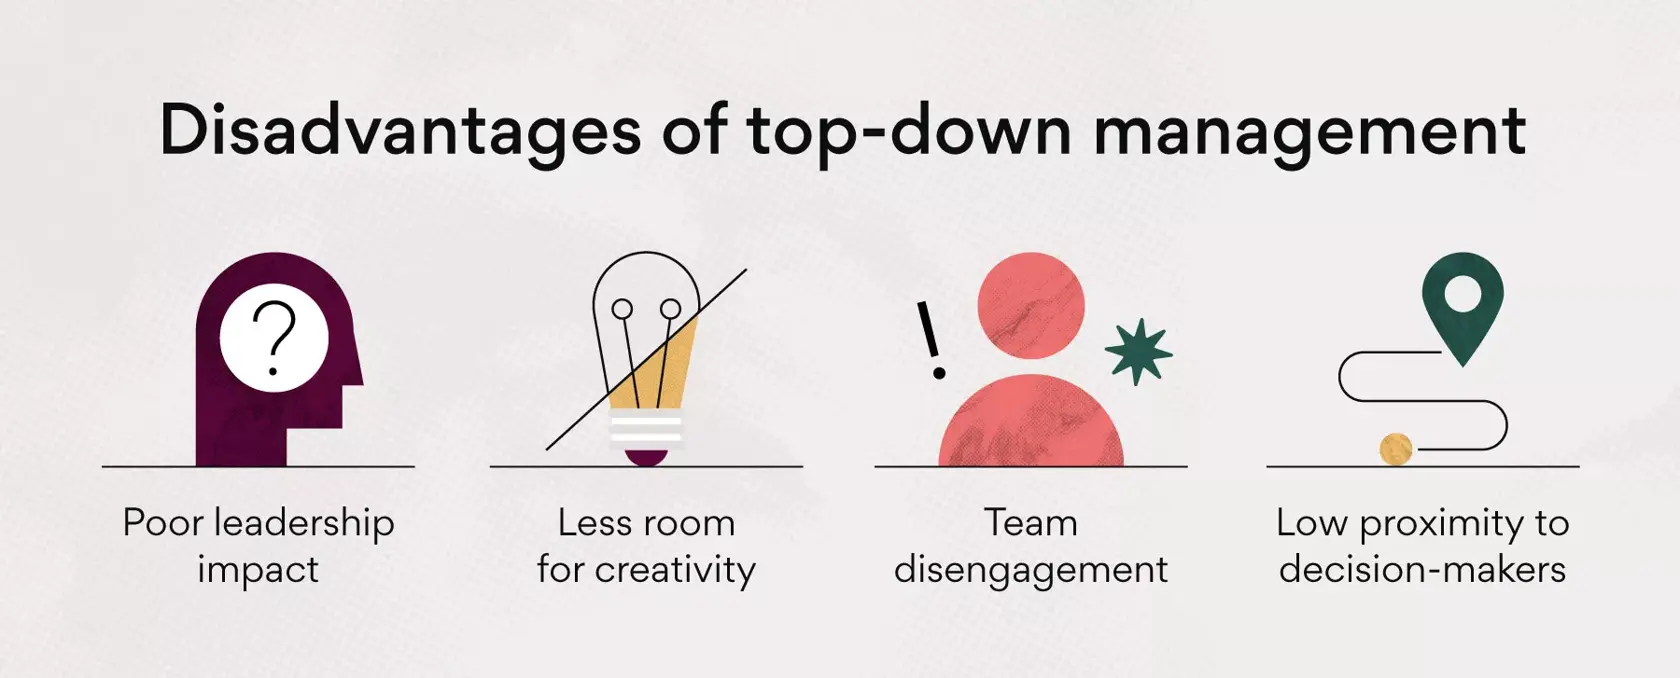 Desvantagens da gestão top-down